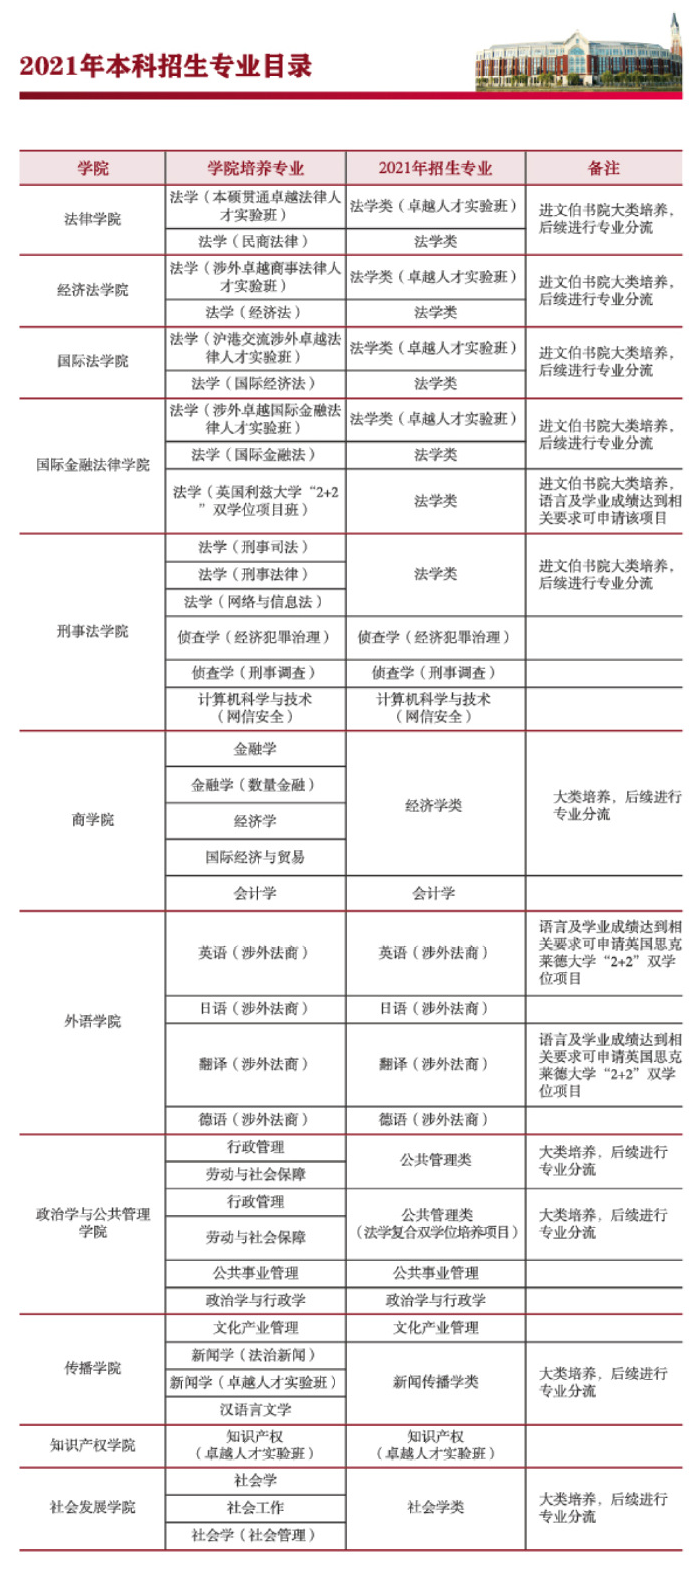 华东政法大学 - 2021年本科招生专业目录